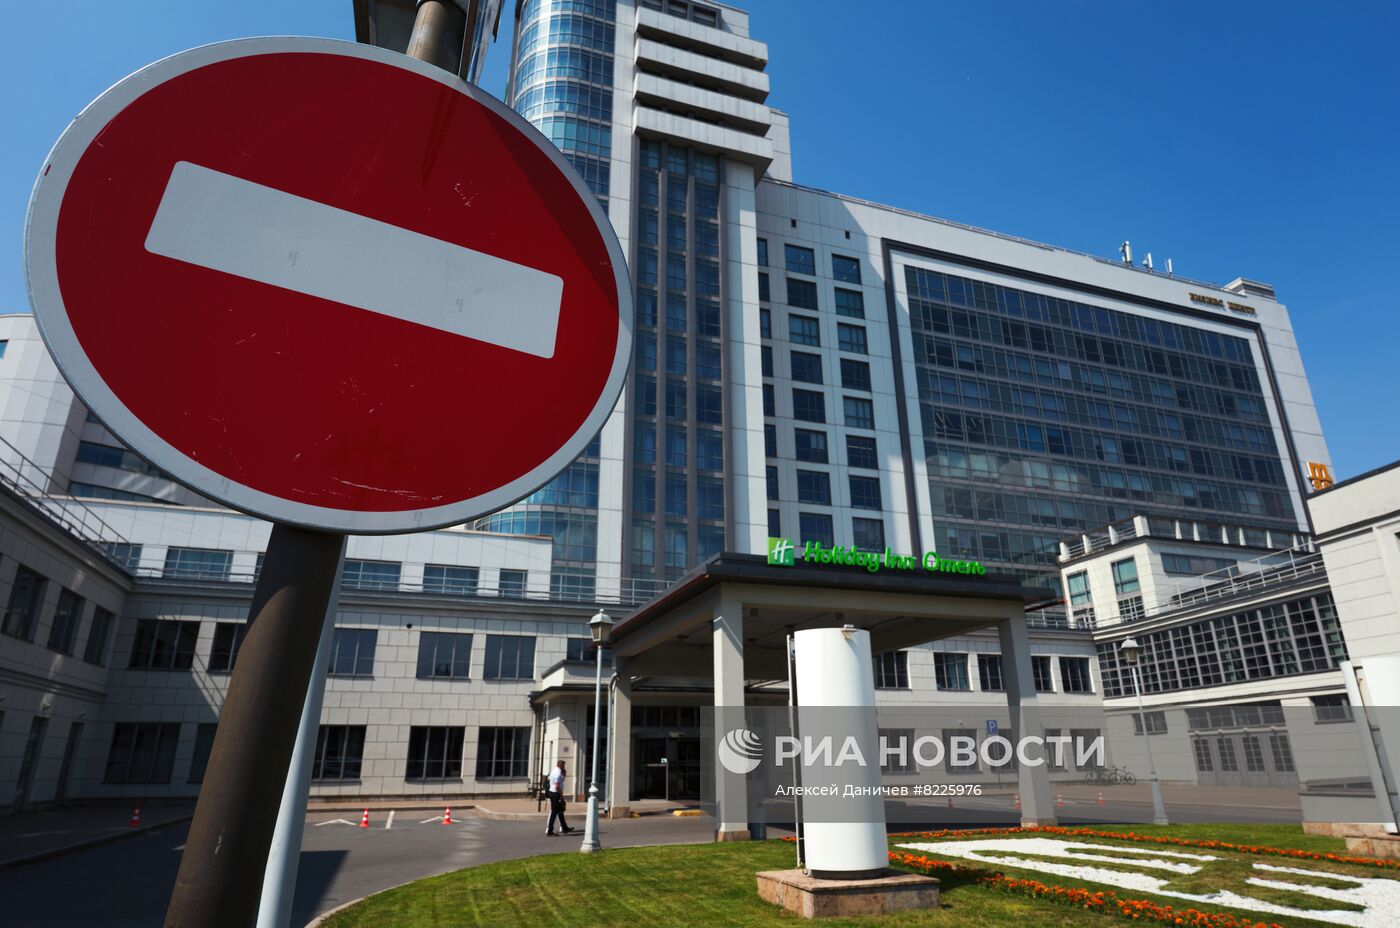 Сети отелей Holiday Inn и Crowne Plaza уходят из России